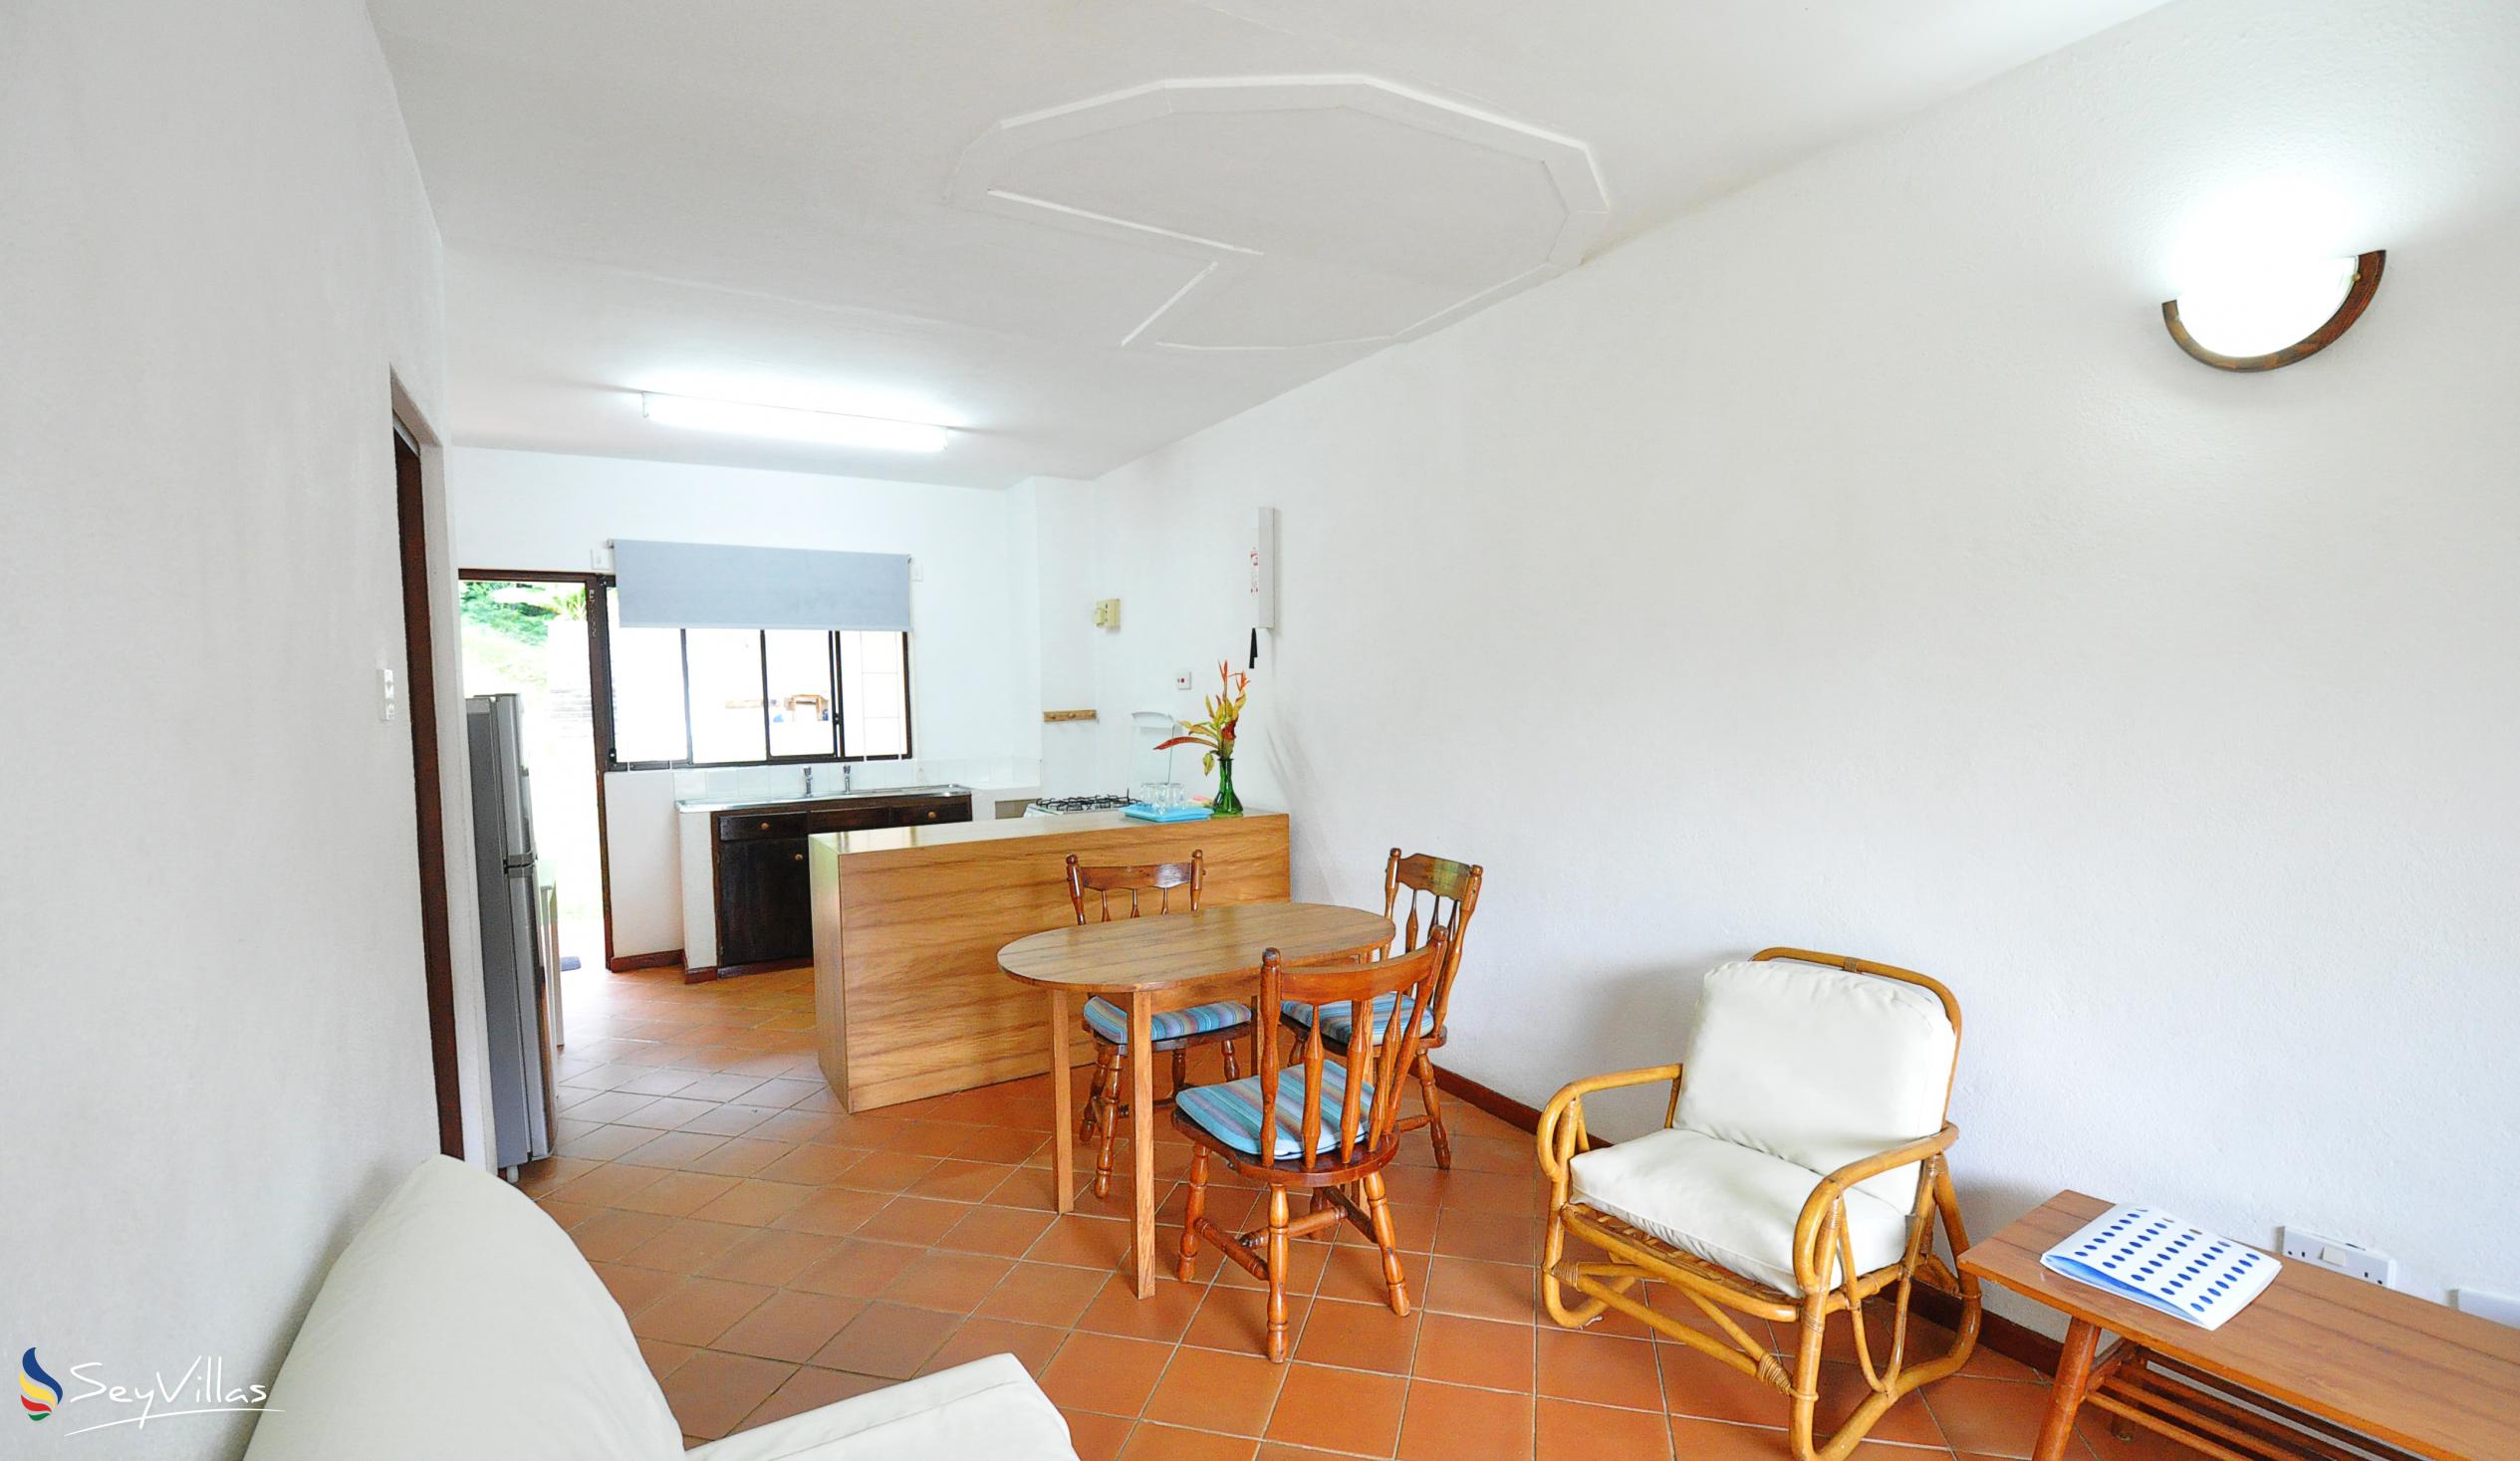 Foto 19: La Résidence - Appartamento Piano Terra - Mahé (Seychelles)